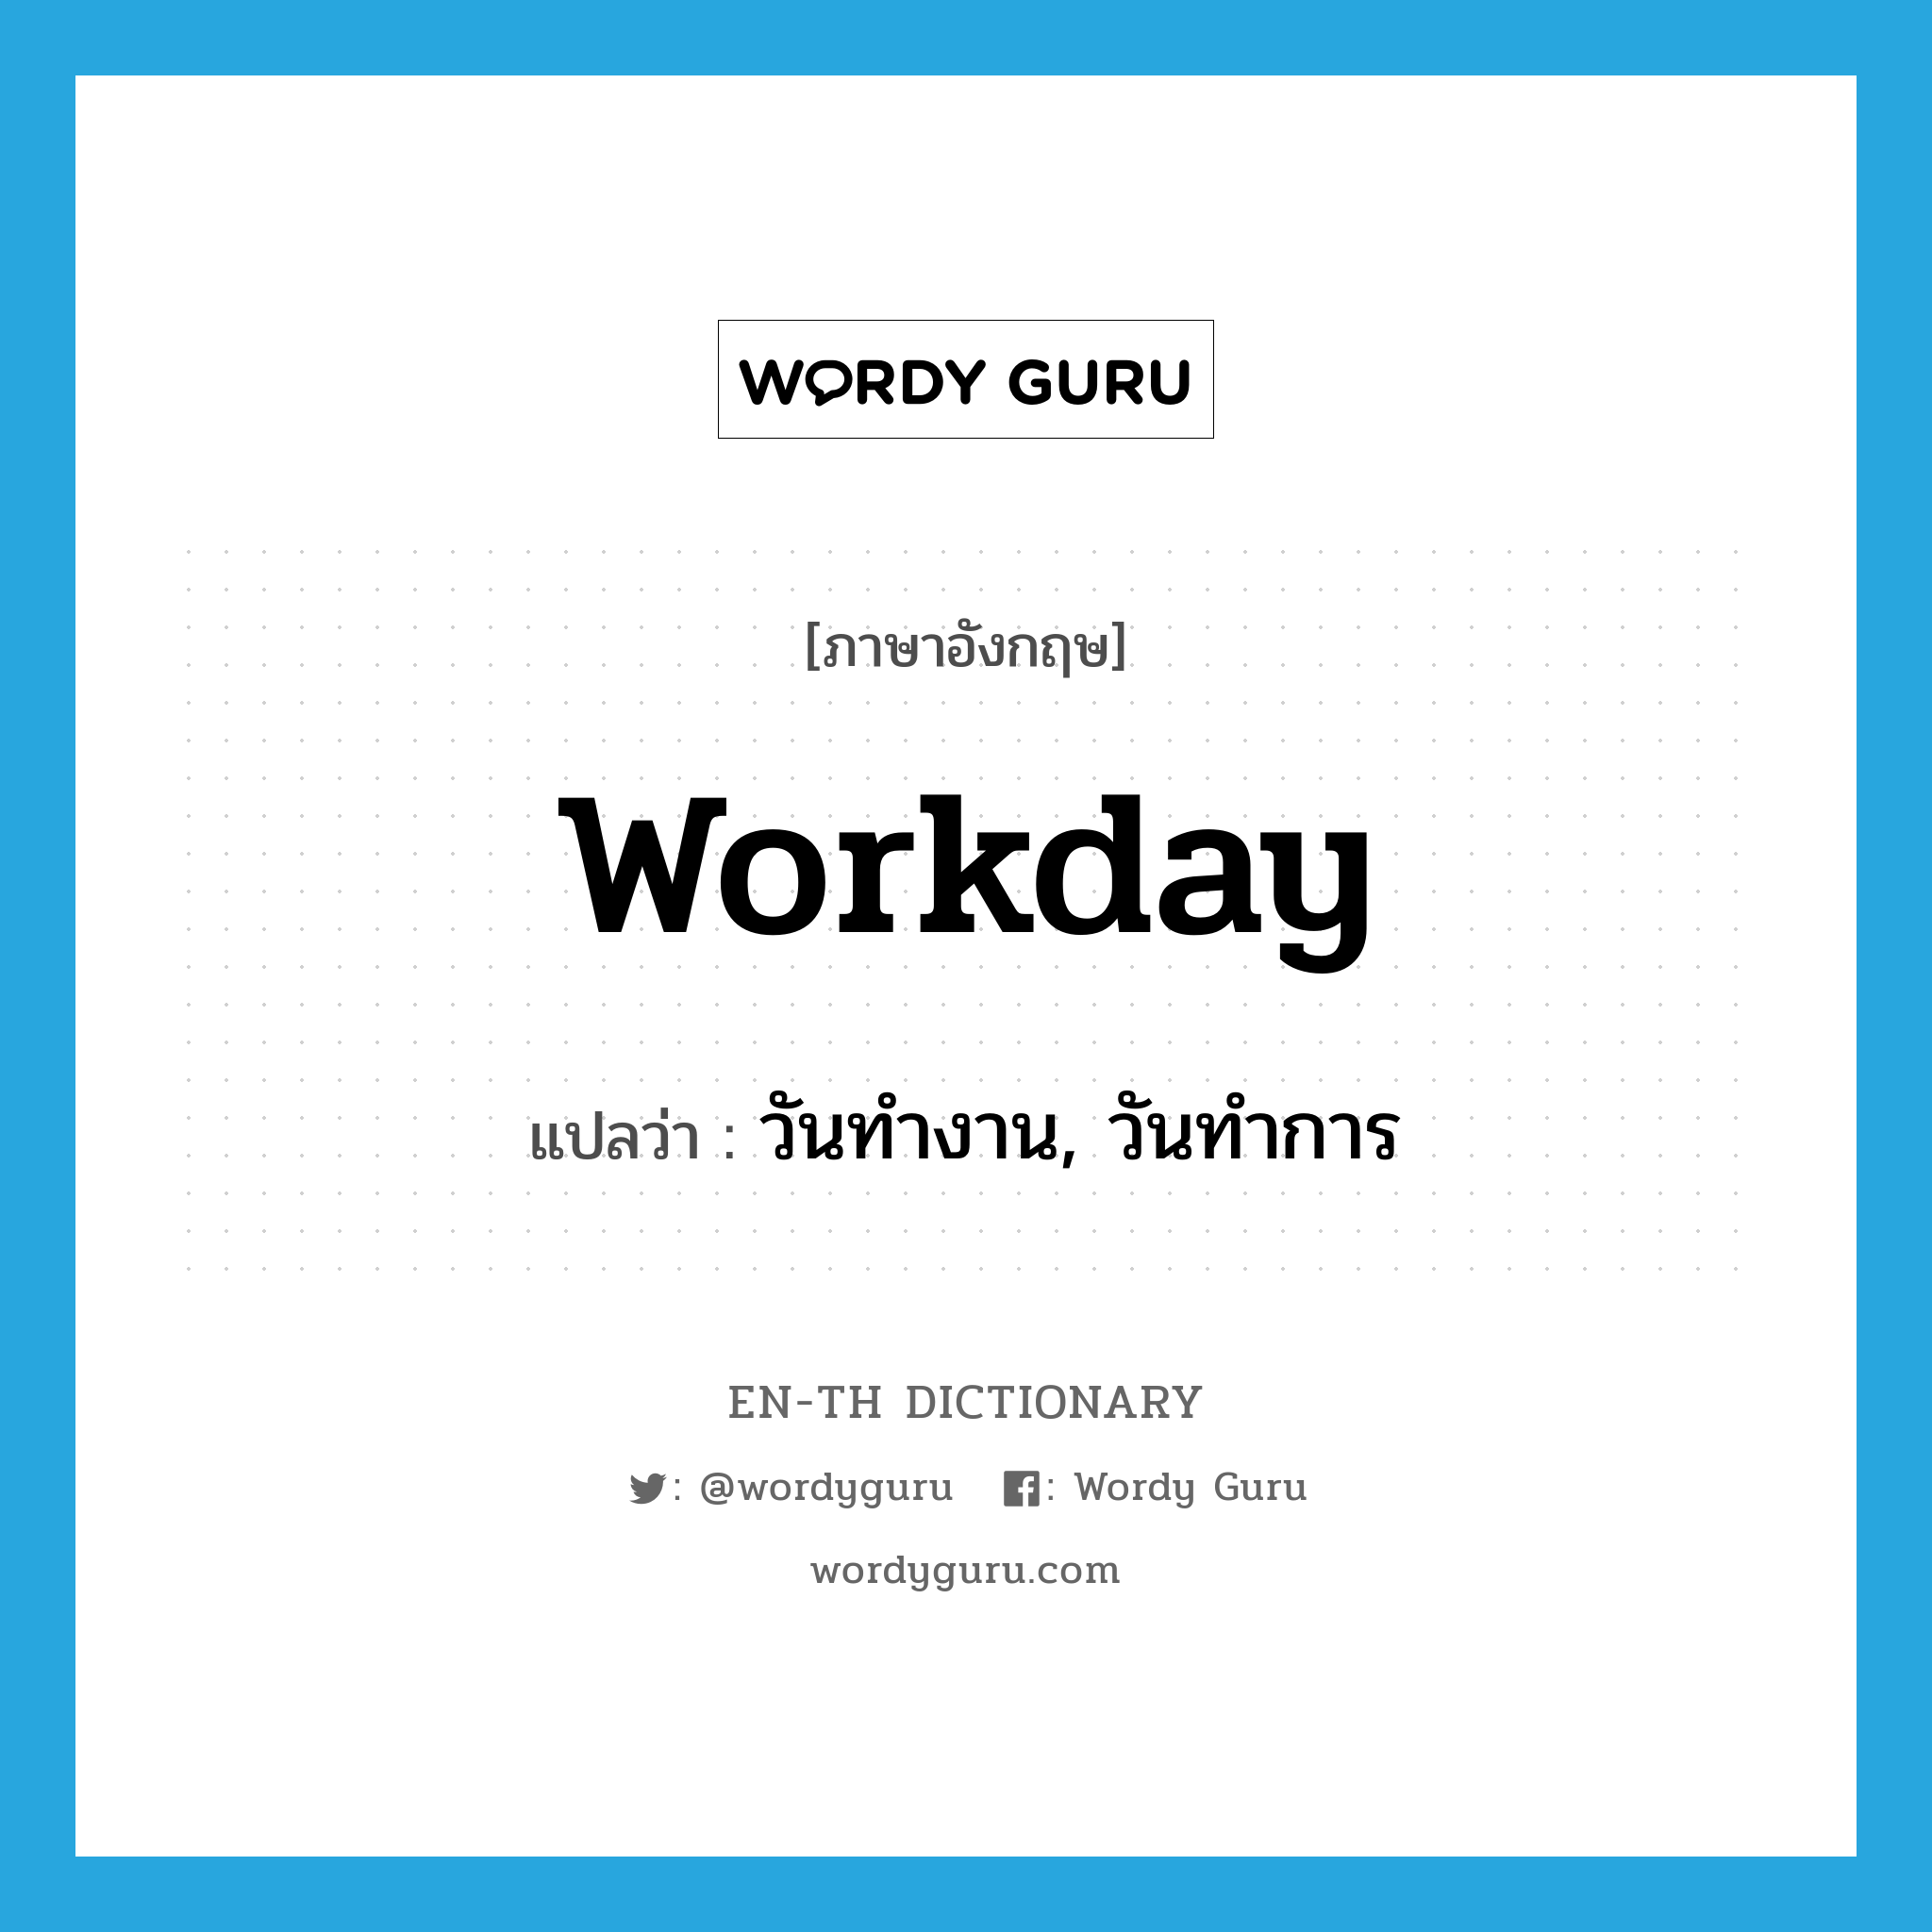 วันทำงาน, วันทำการ ภาษาอังกฤษ?, คำศัพท์ภาษาอังกฤษ วันทำงาน, วันทำการ แปลว่า workday ประเภท N หมวด N